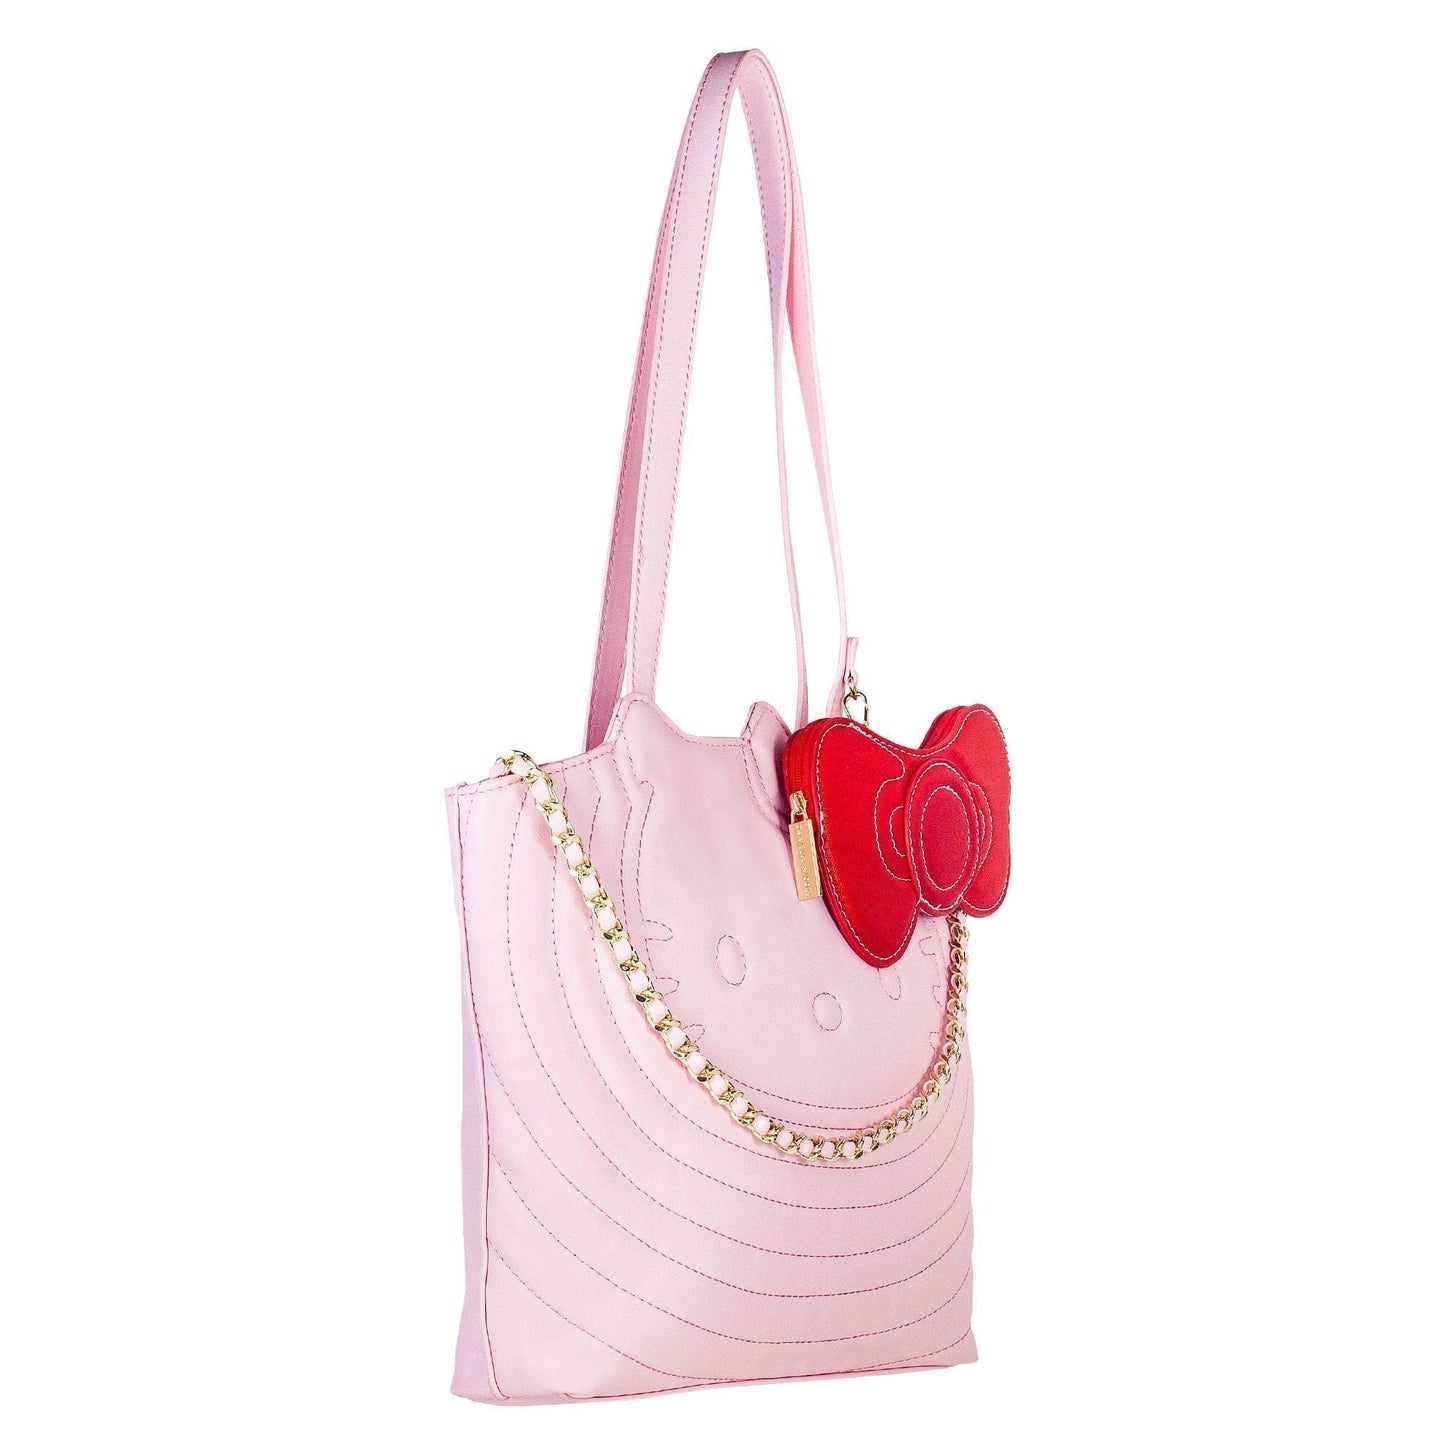 Hello Kitty Handbags